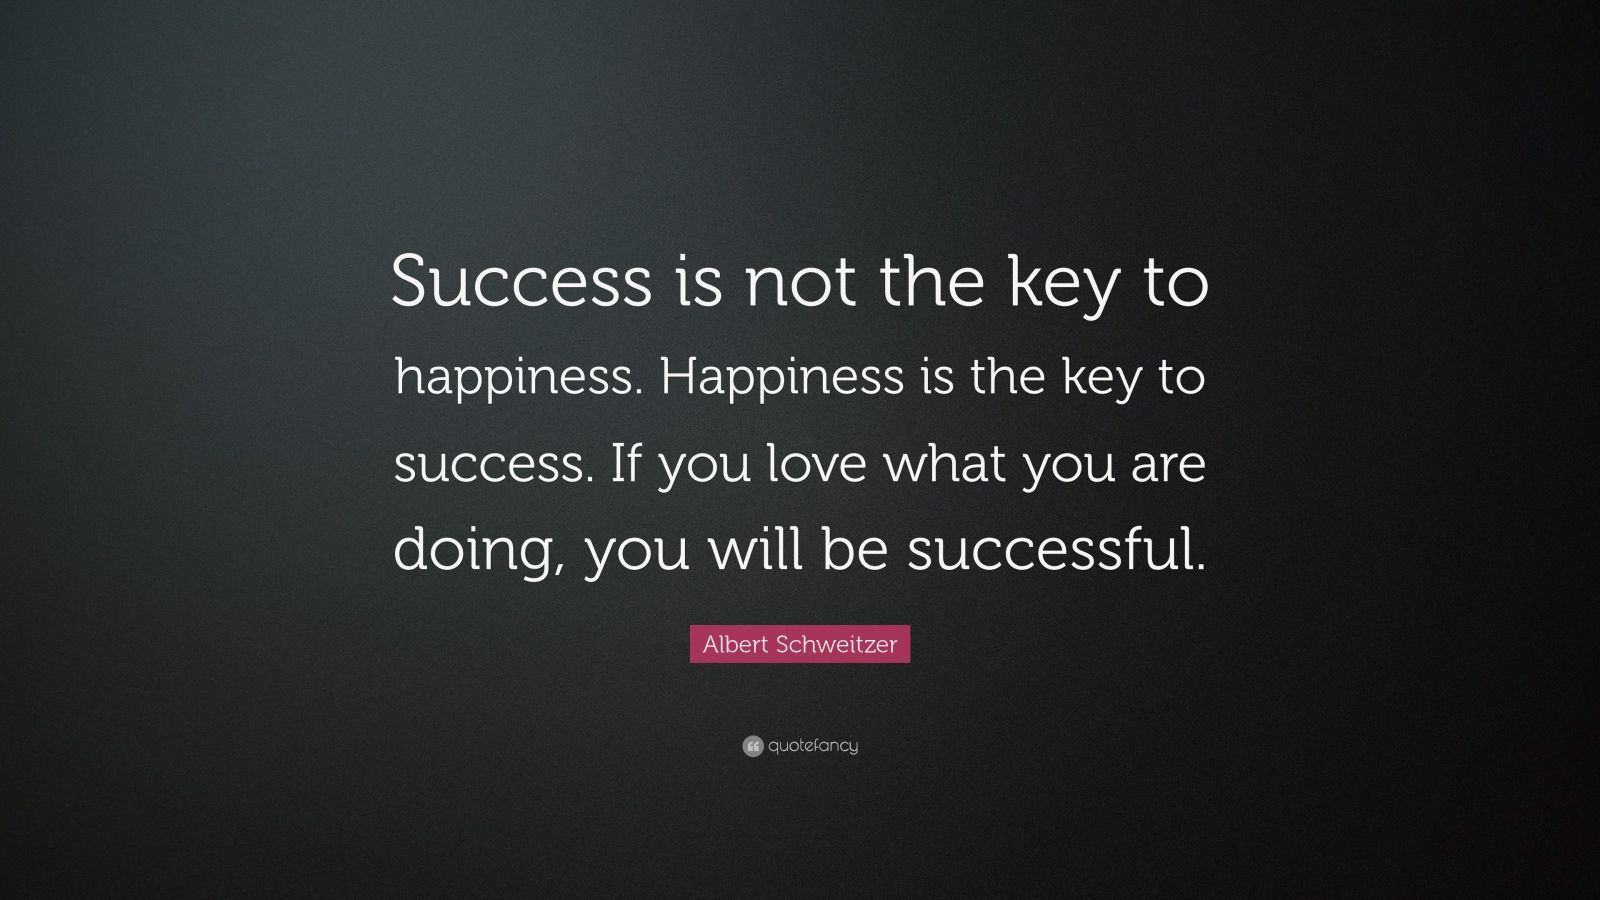 31889-Albert-Schweitzer-Quote-Success-is-not-the-key-to-happiness.jpg